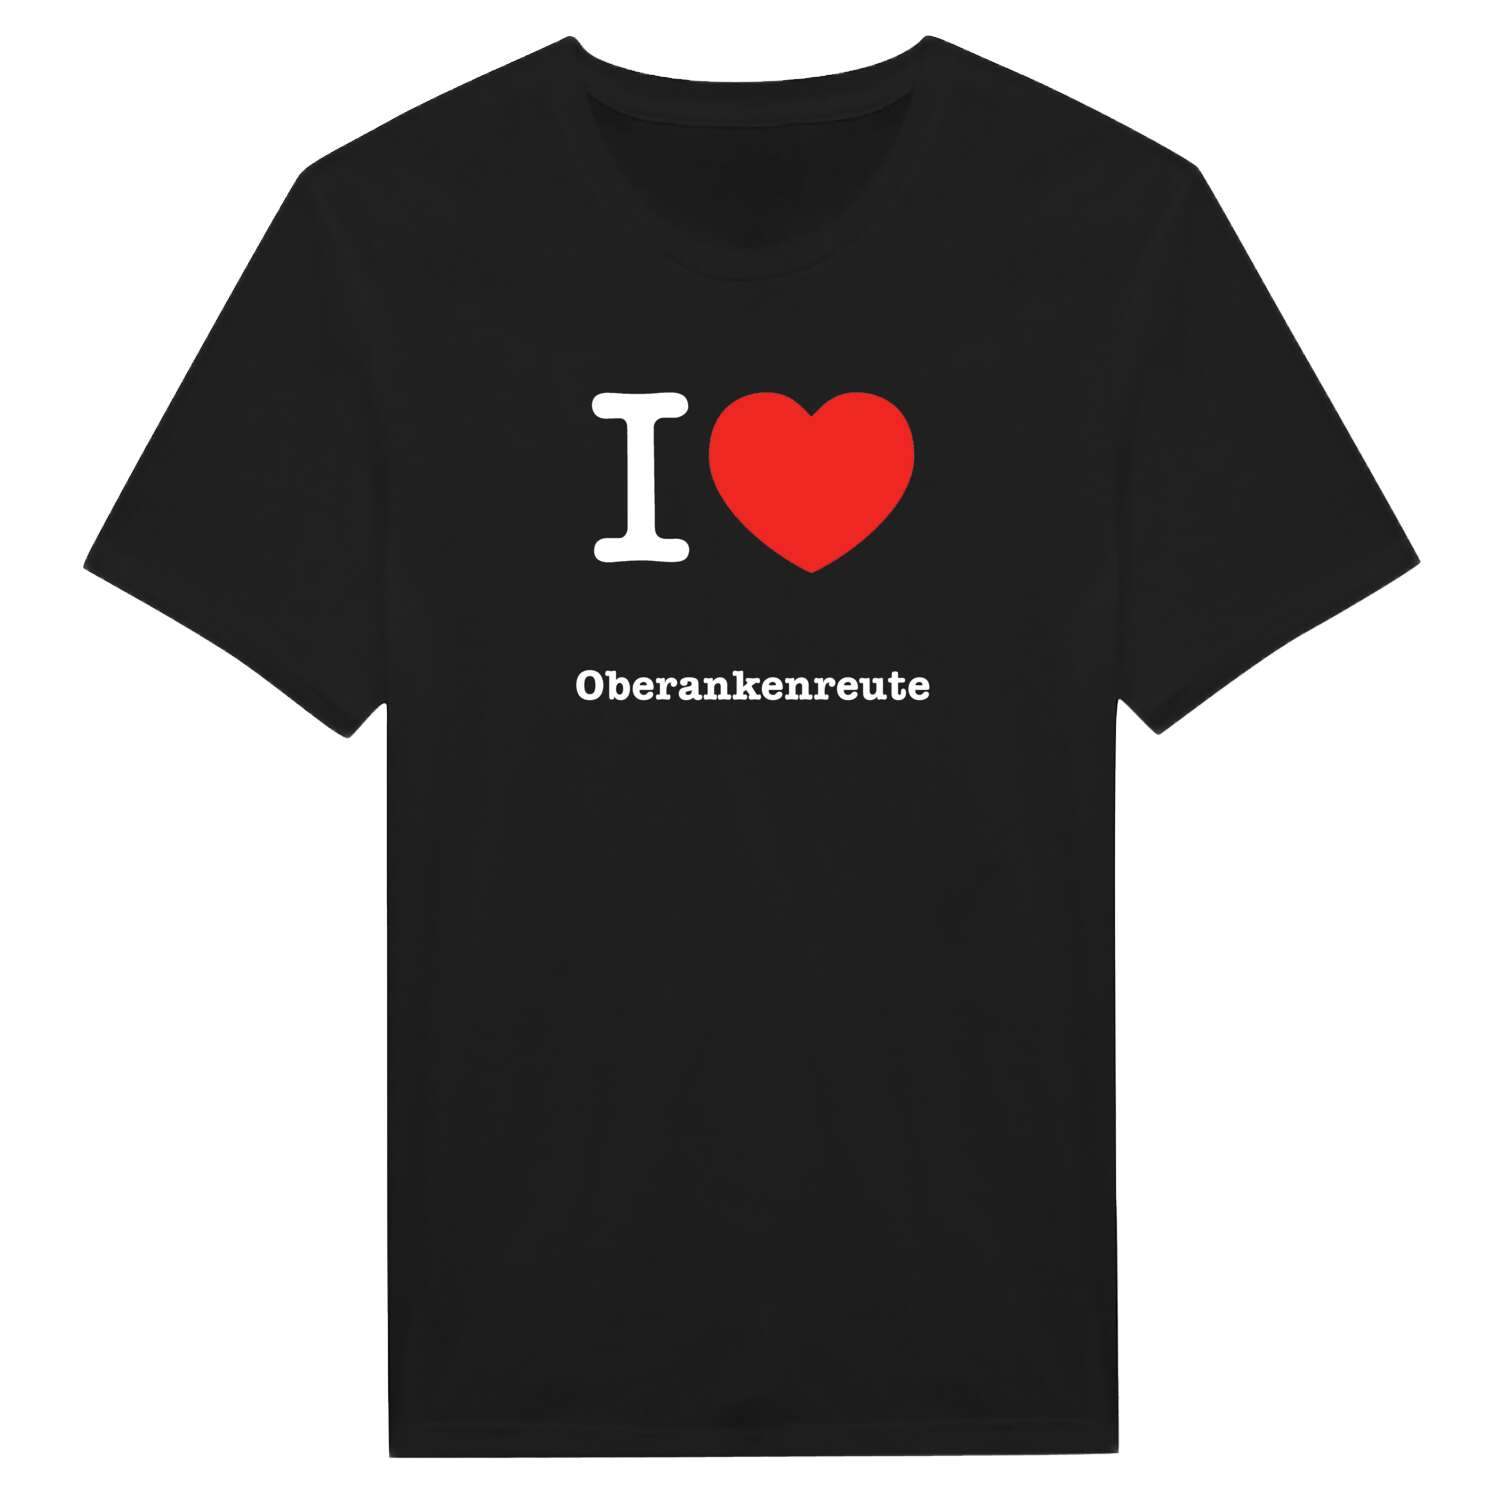 Oberankenreute T-Shirt »I love«